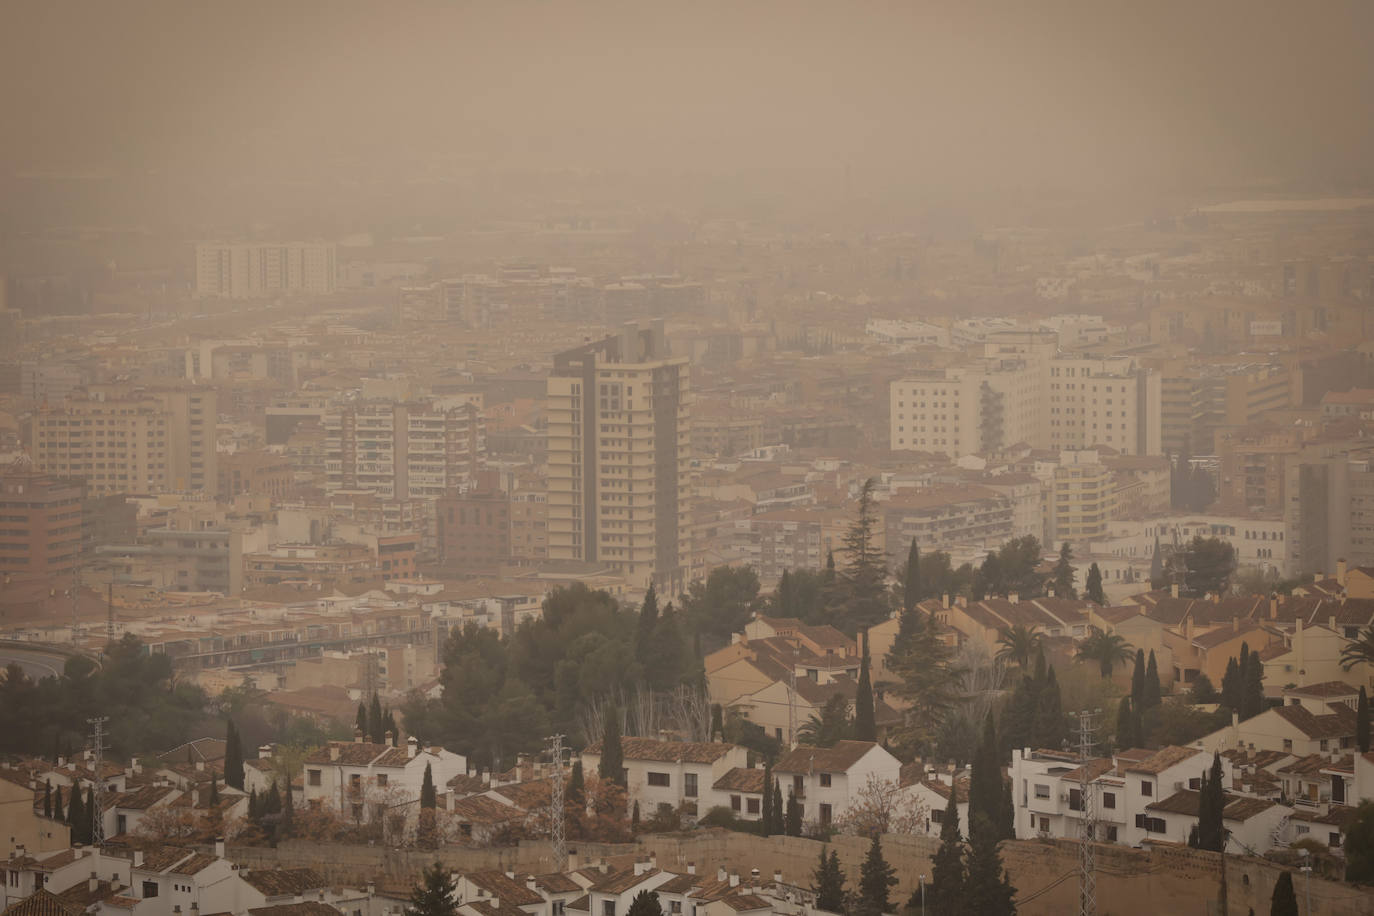 Polvo en los coches, calles y en el ambiente llegado del Sahara